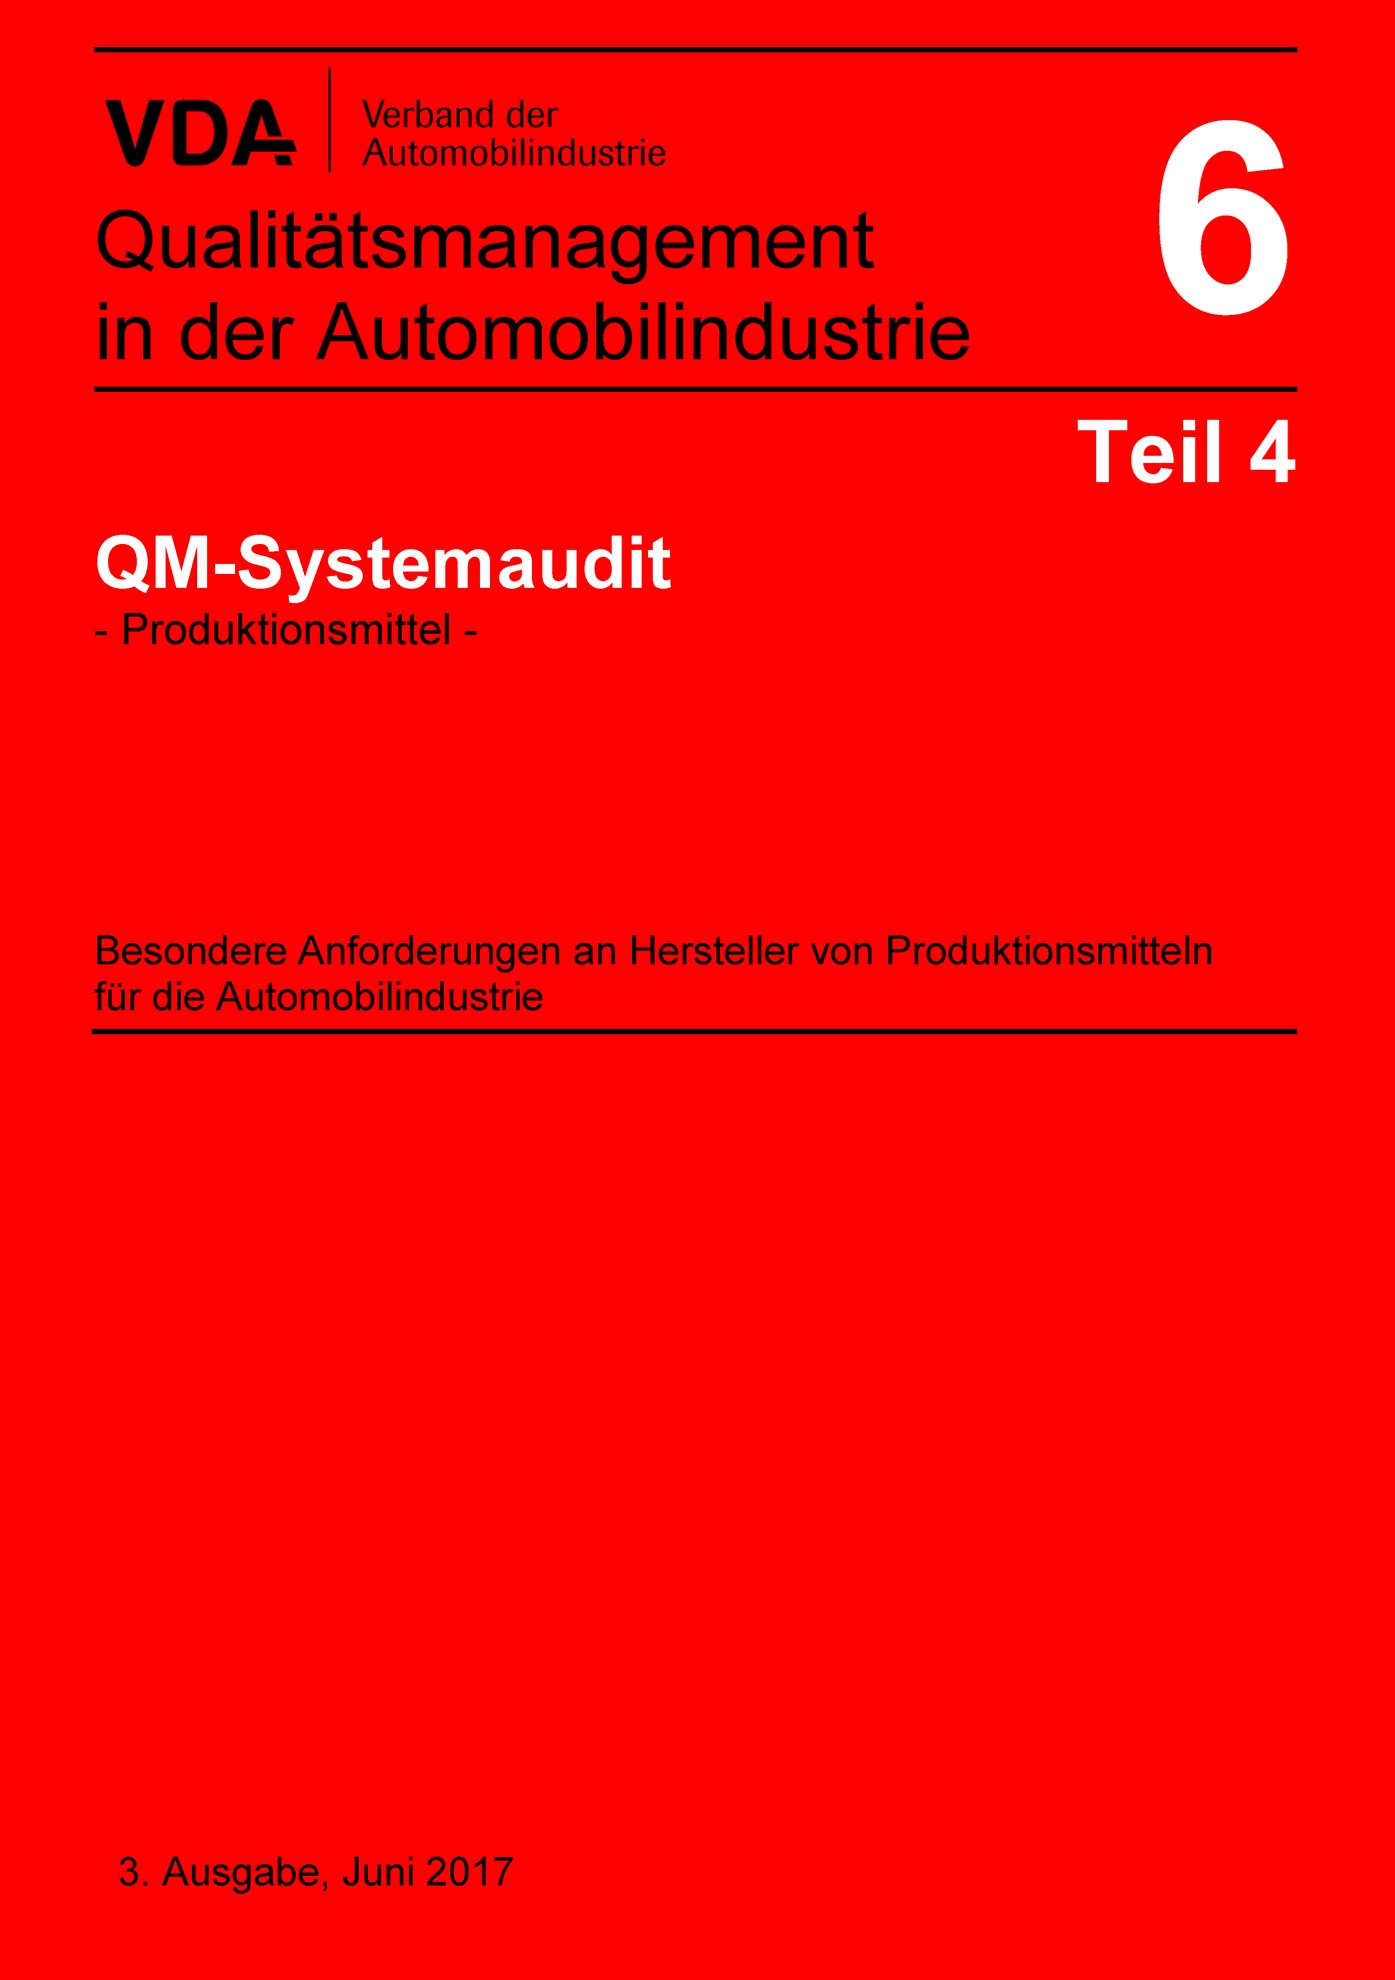 Náhľad  VDA Band 6 Teil 4_3. Ausgabe 2017 QM-Systemaudit - Produktionsmittel -
 Besondere Anforderungen an Hersteller von 
 Produktionsmitteln für die Automobilindustrie 1.1.2017